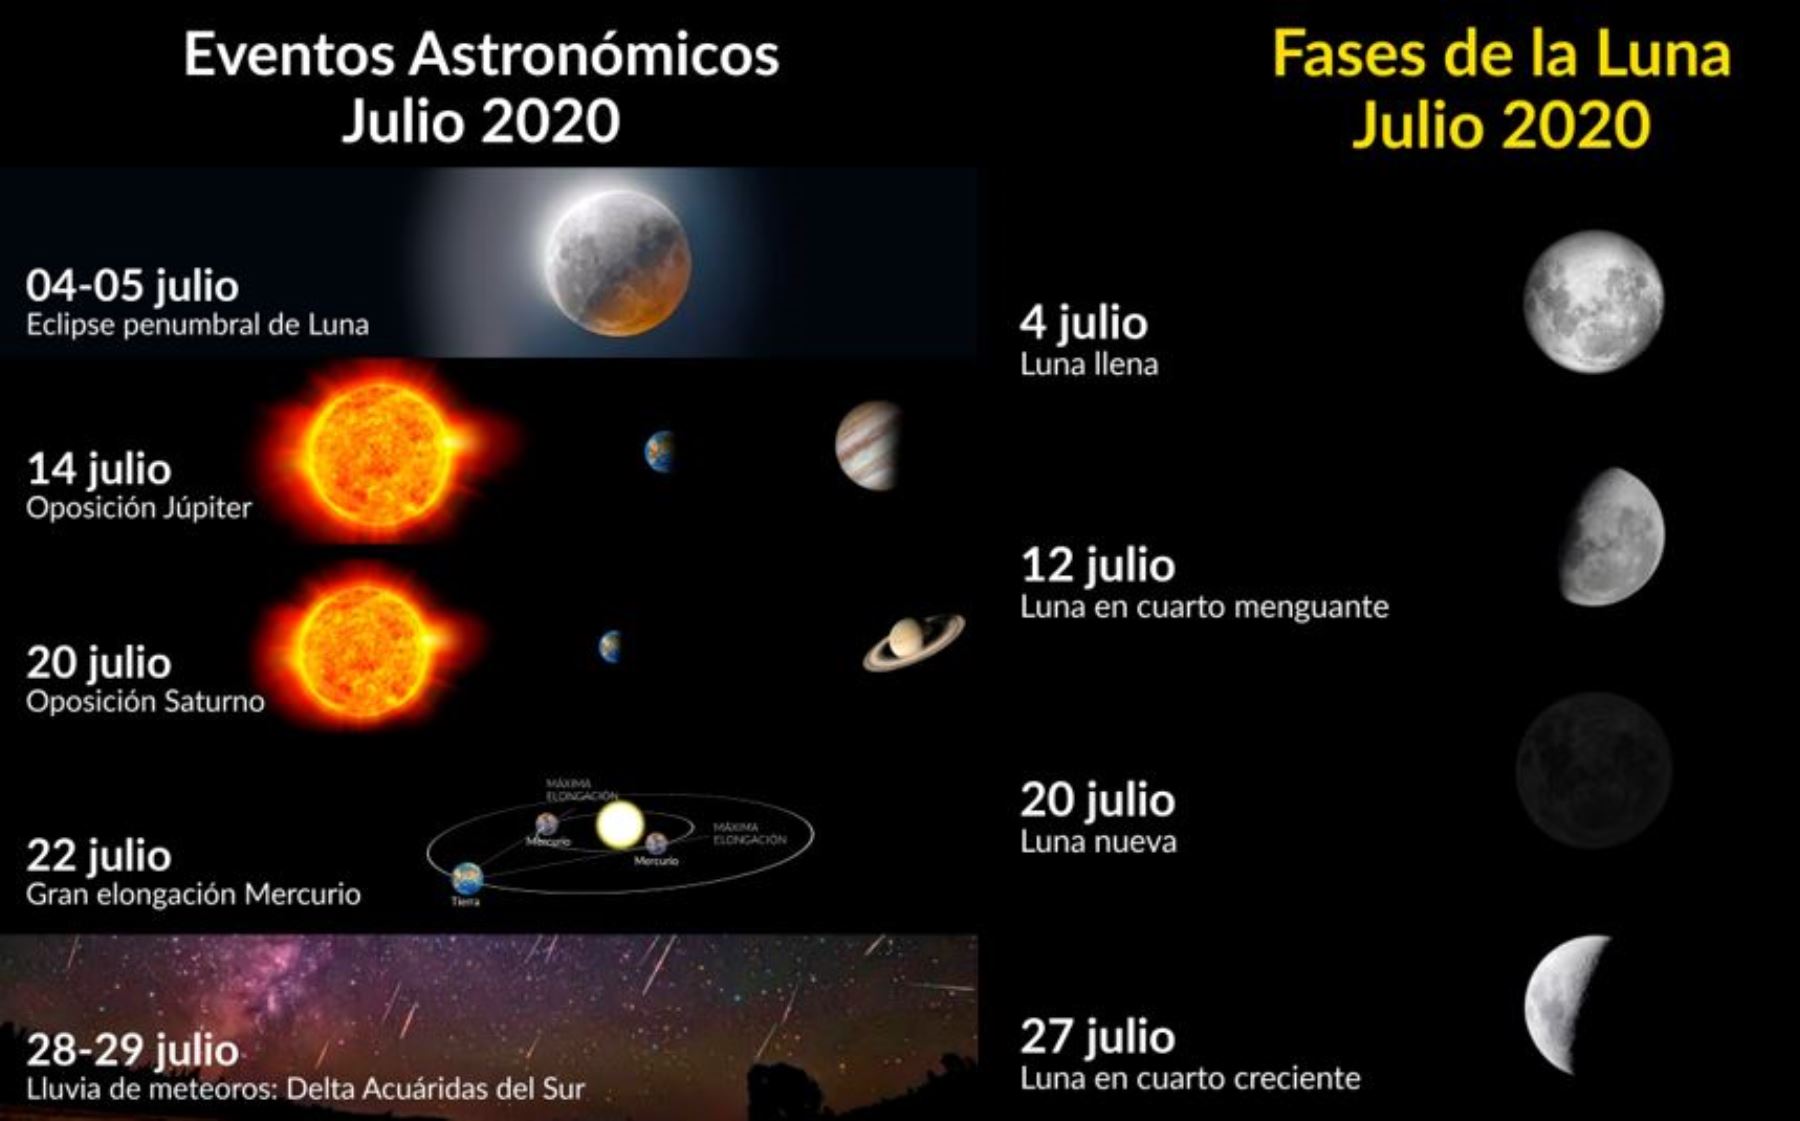 Eventos astronómicos del mes de julio 2020, según CONIDA